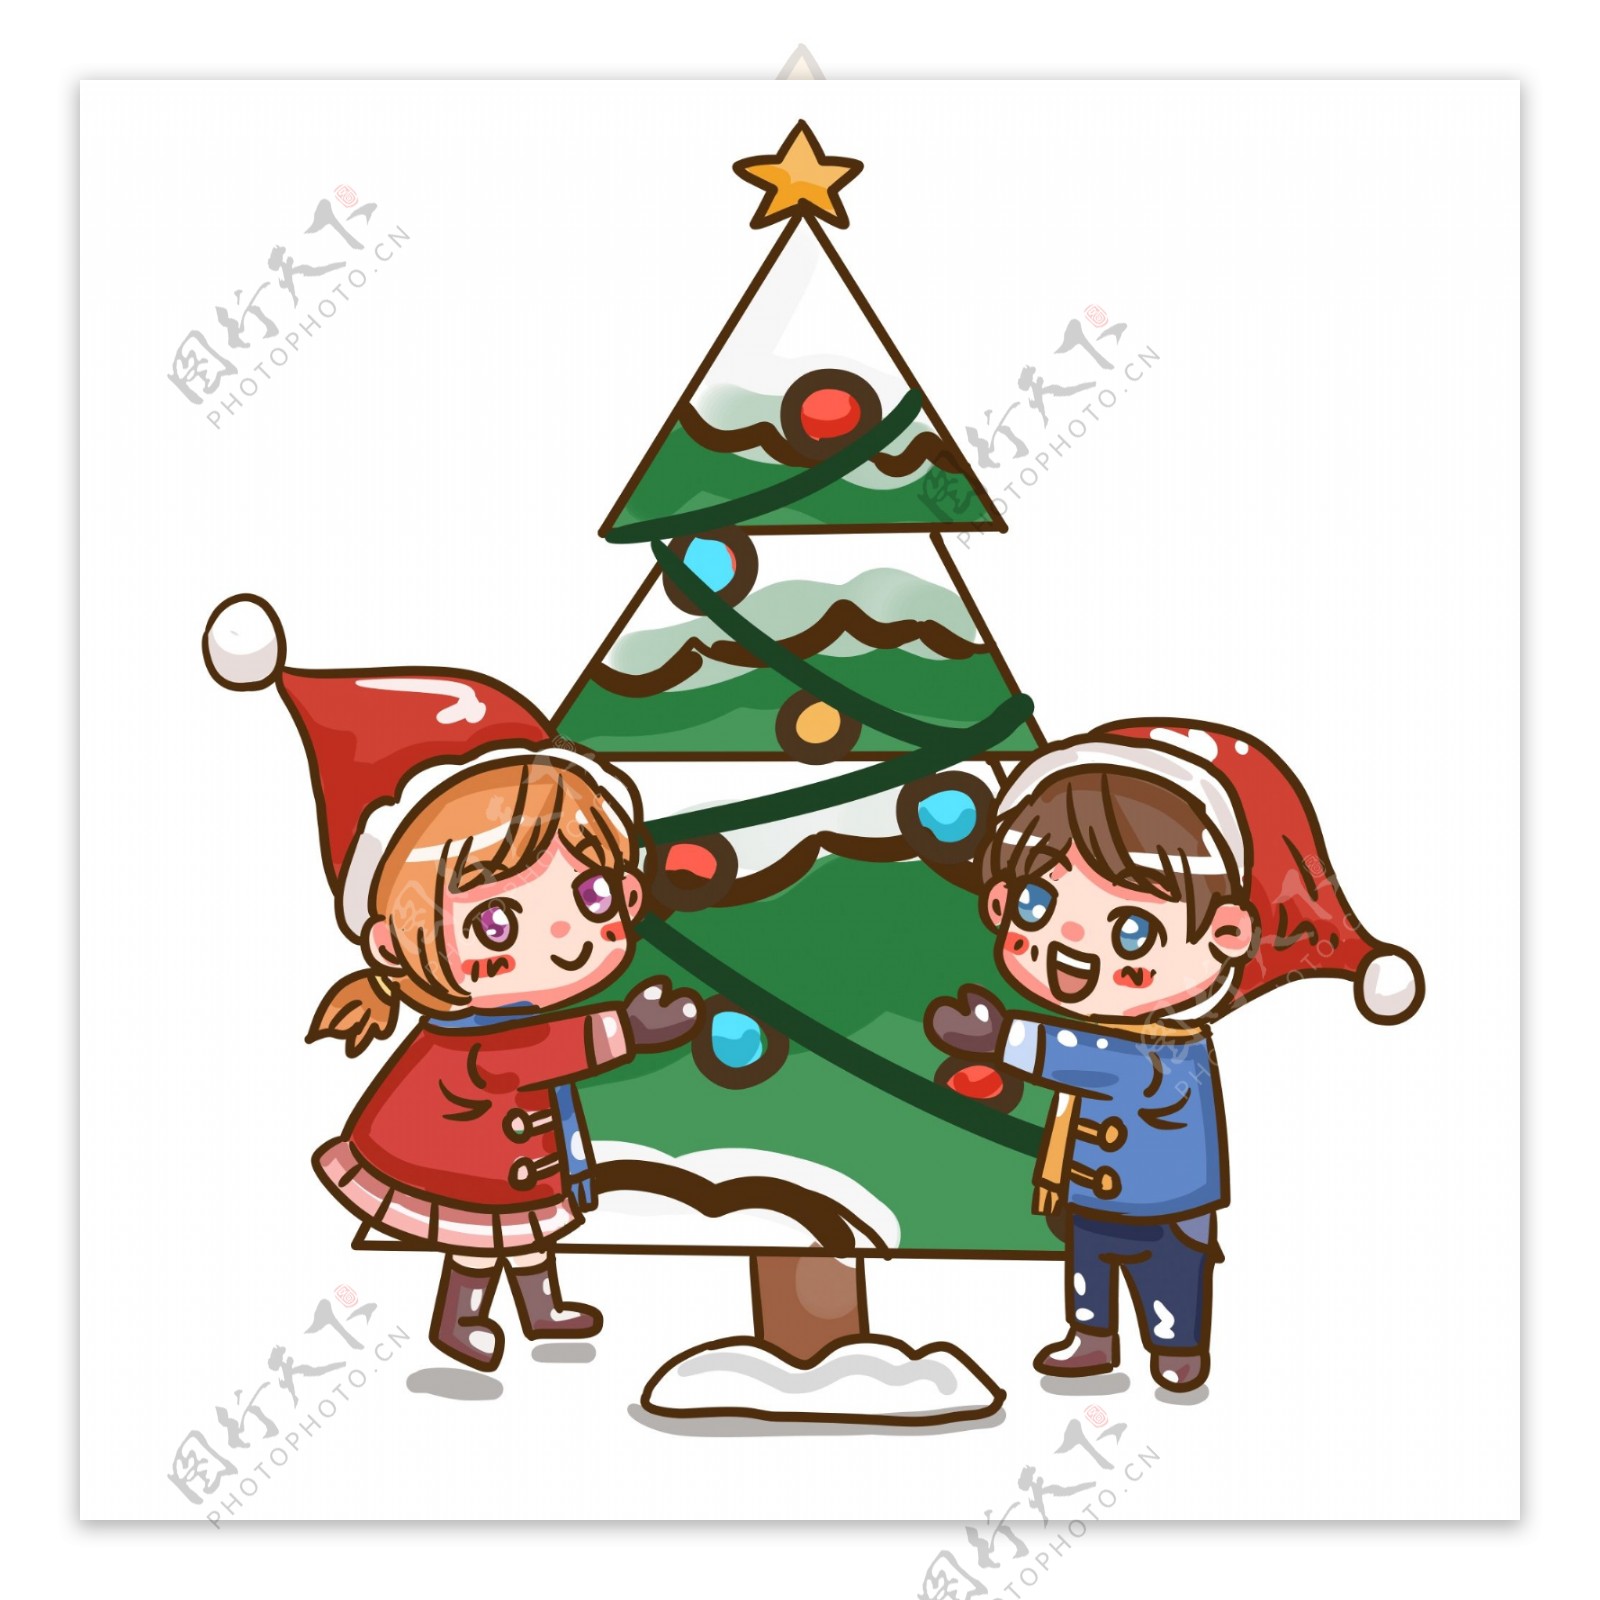 圣诞节可爱情侣与圣诞树庆祝卡通手绘素材